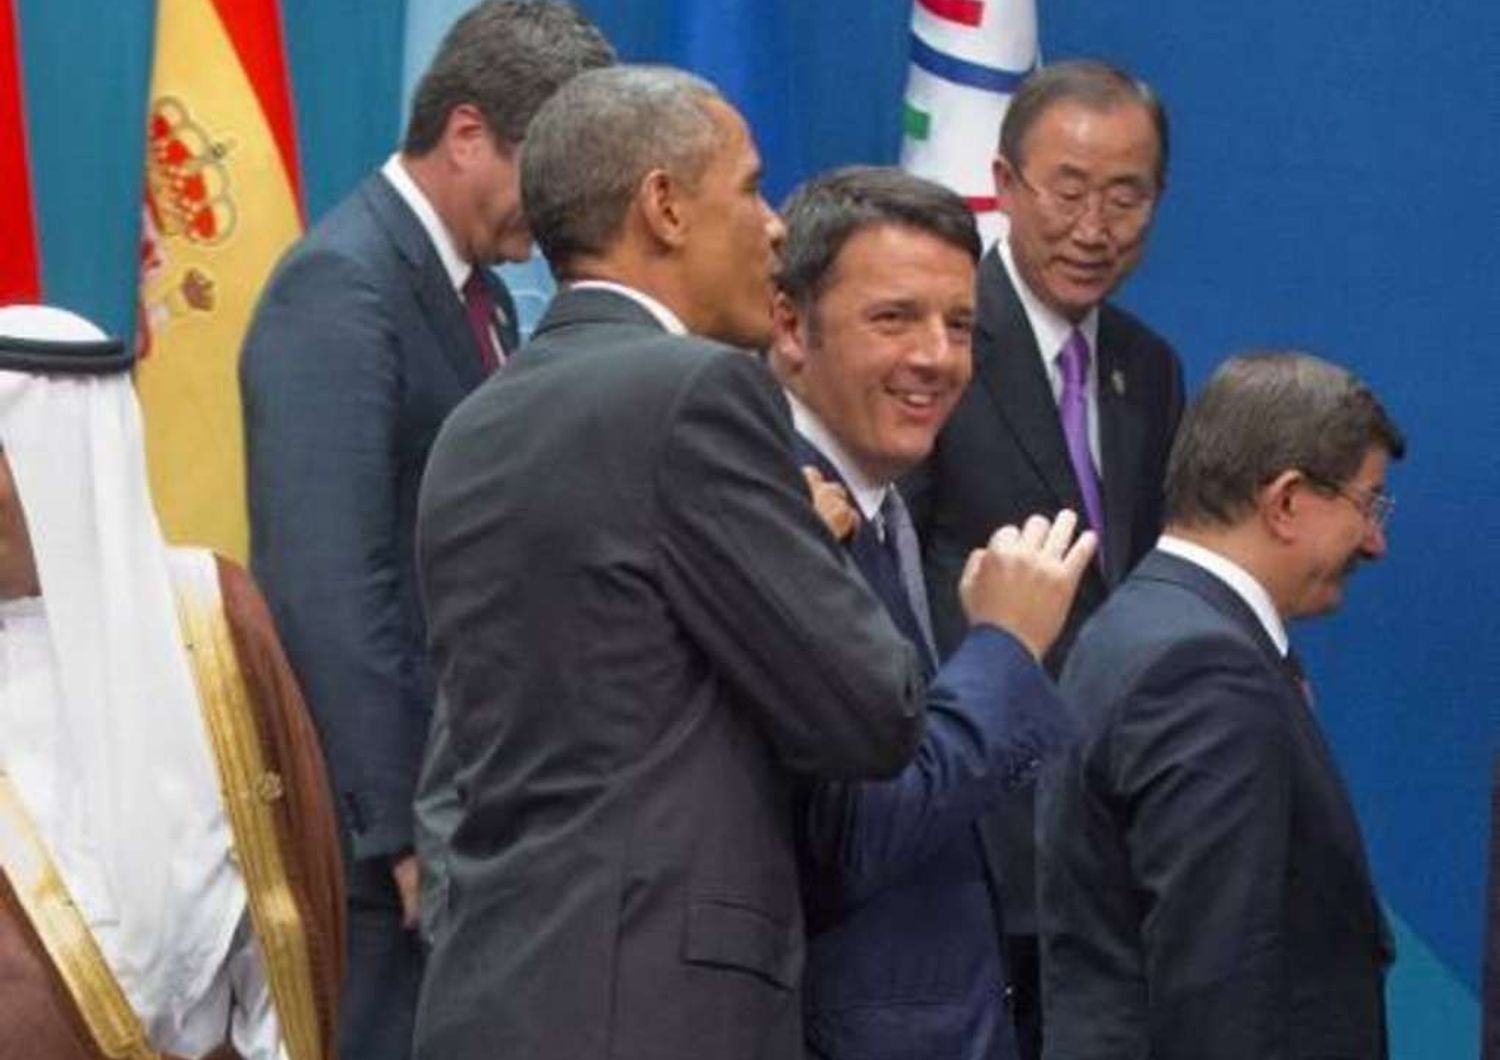 G20: Renzi, "Faremo riforme, ma Ue cambi". Giallo su possibile abbandono Putin - foto